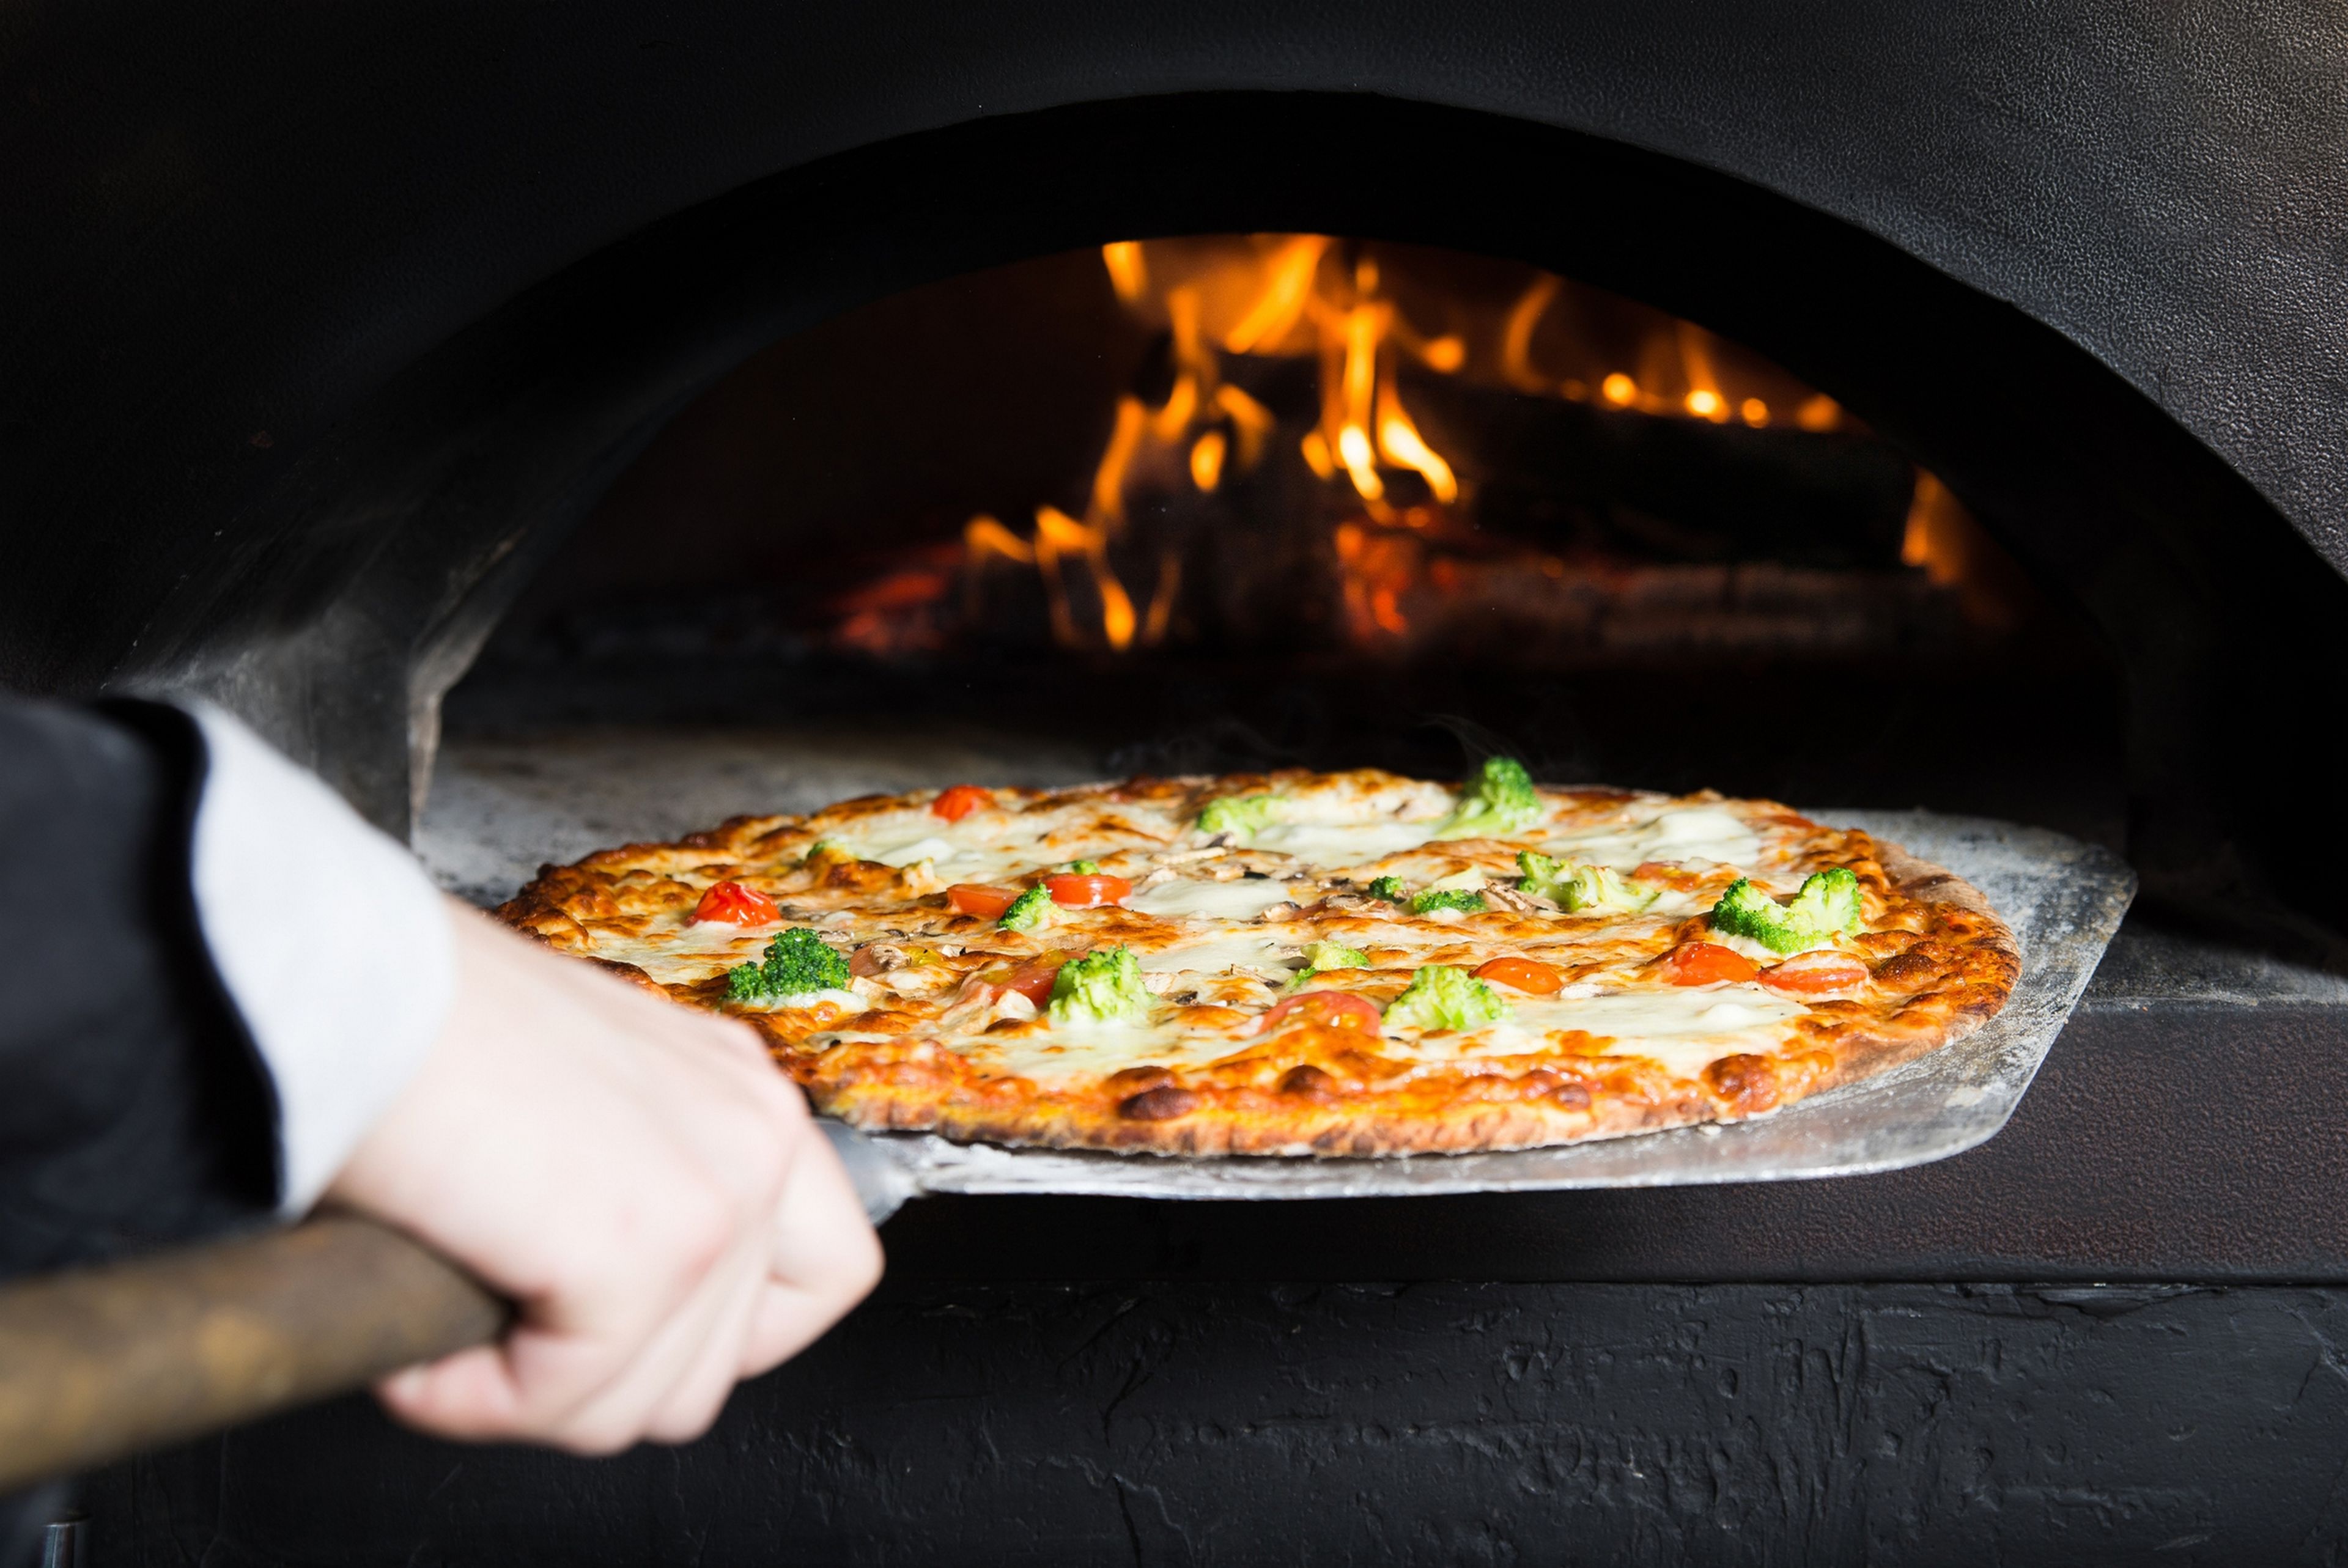 Cosas que nunca debes pedir en un restaurante o pizzer铆a, seg煤n varios chefs